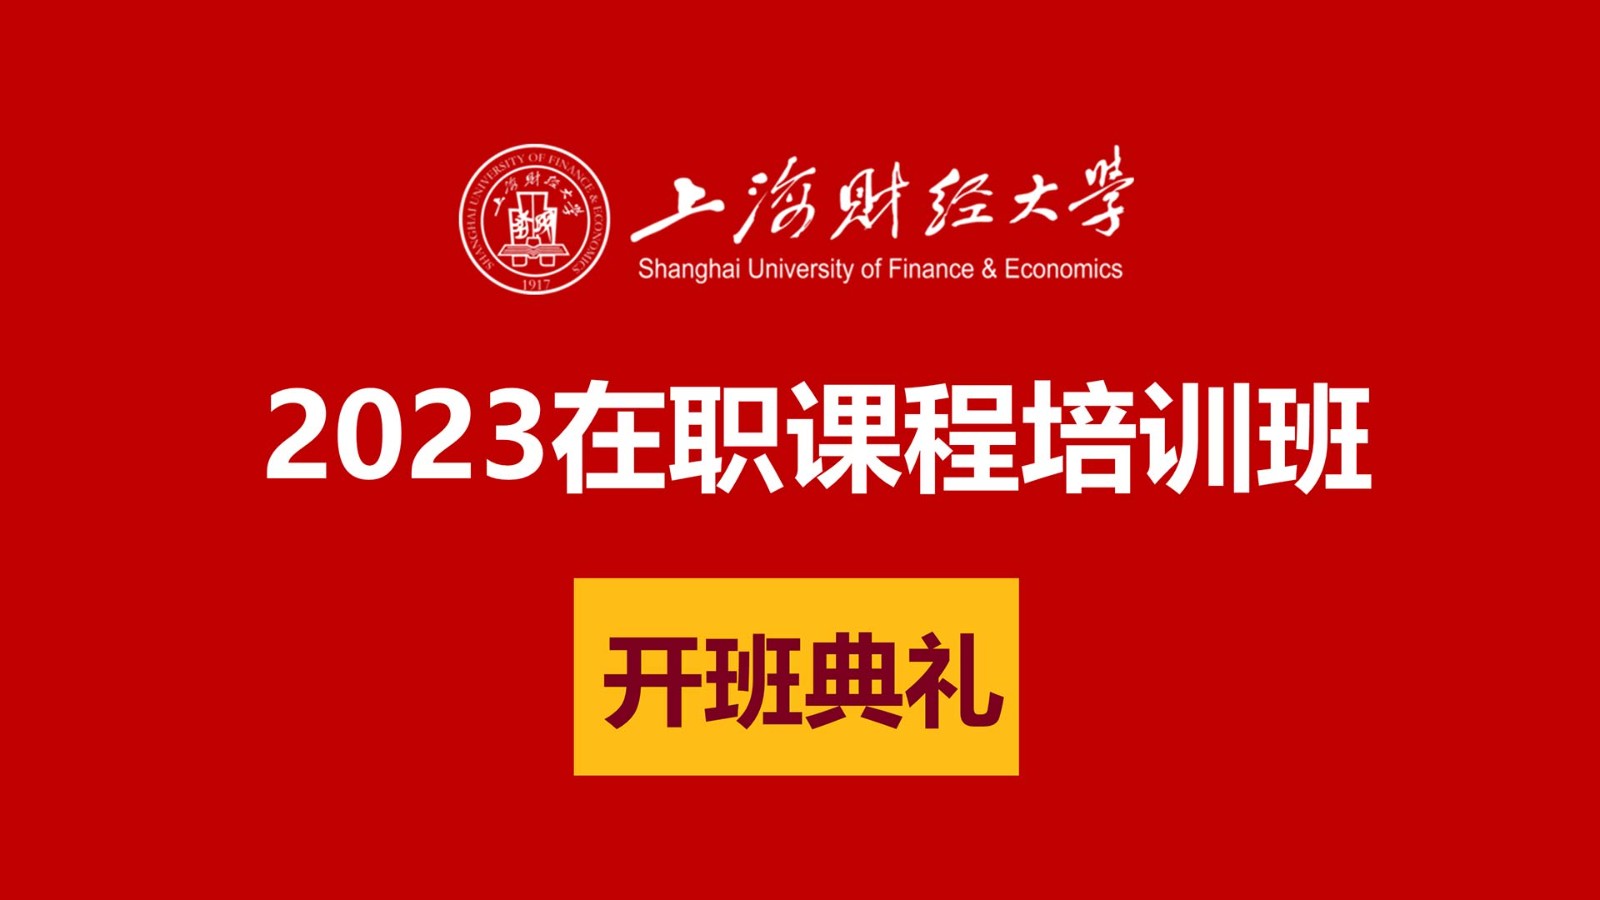 2023年上海财经大学在职课程班开班典礼